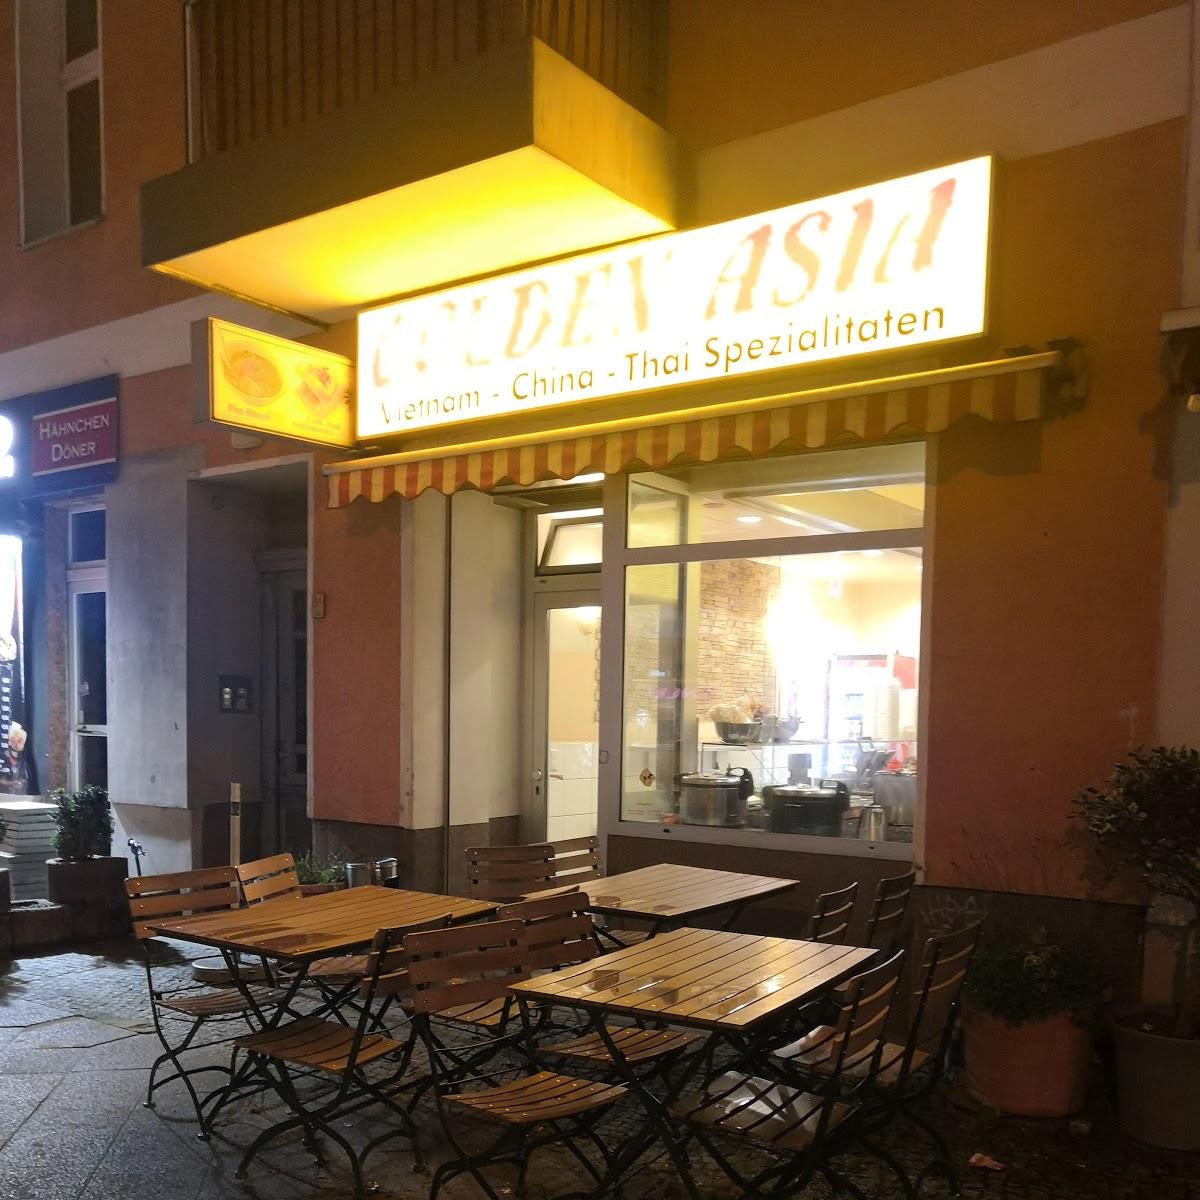 Restaurant "Golden Asia" in Berlin